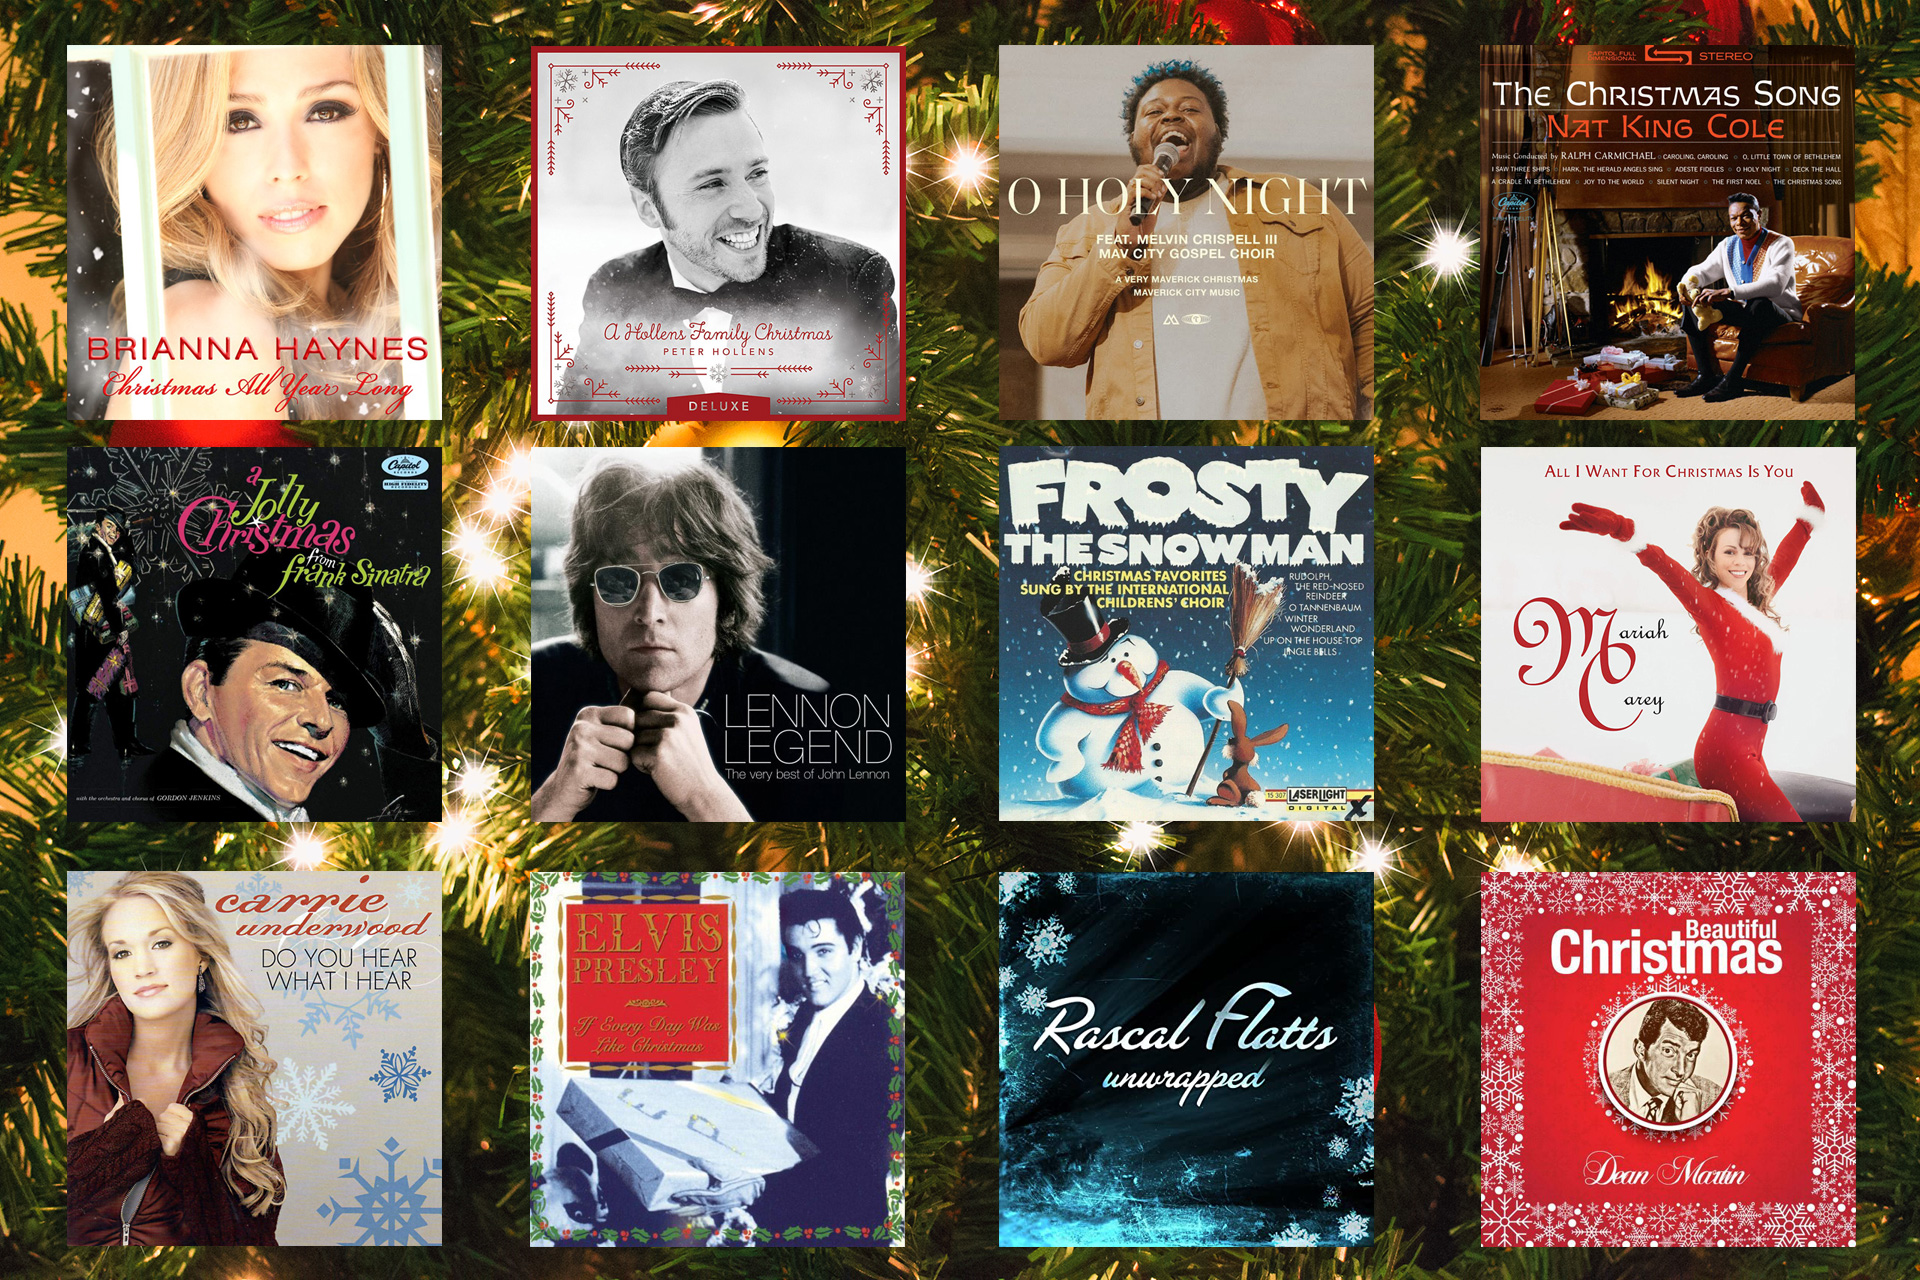 Christmas Songs List - Top 12 Best Christmas Songs